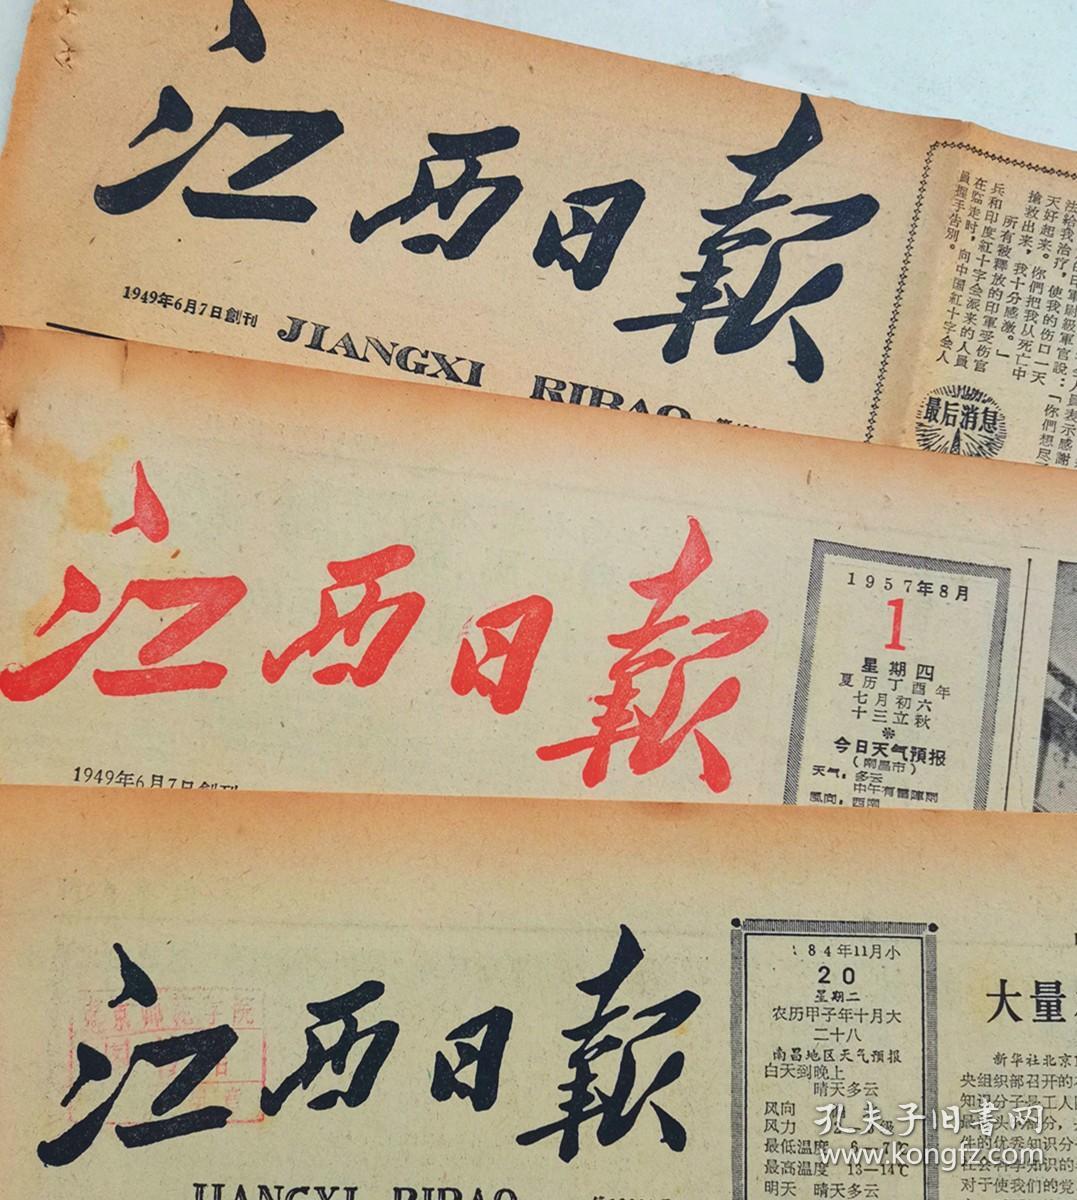 1952年10月23日江西日报